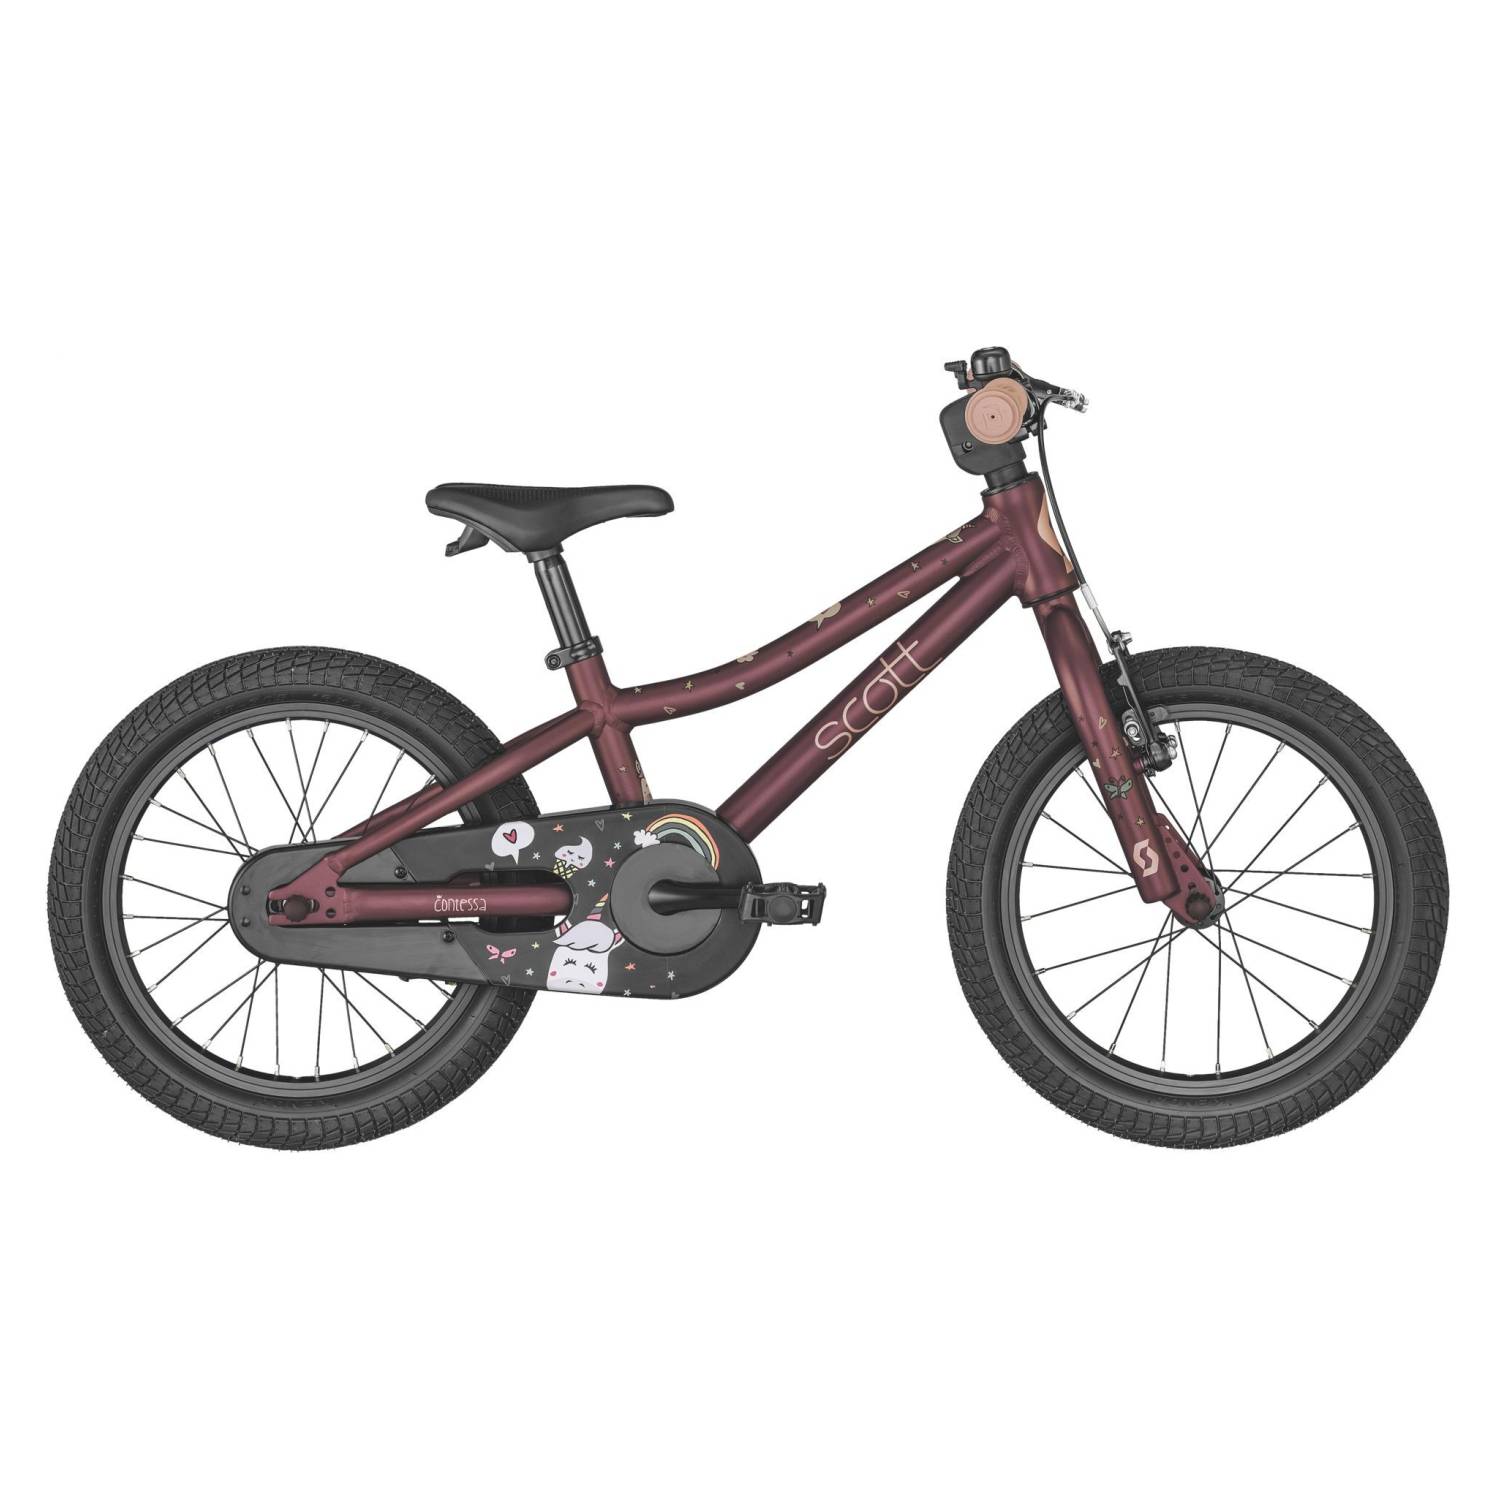 Bicicleta infantil unisex de aleación de acero -para niños y niñas